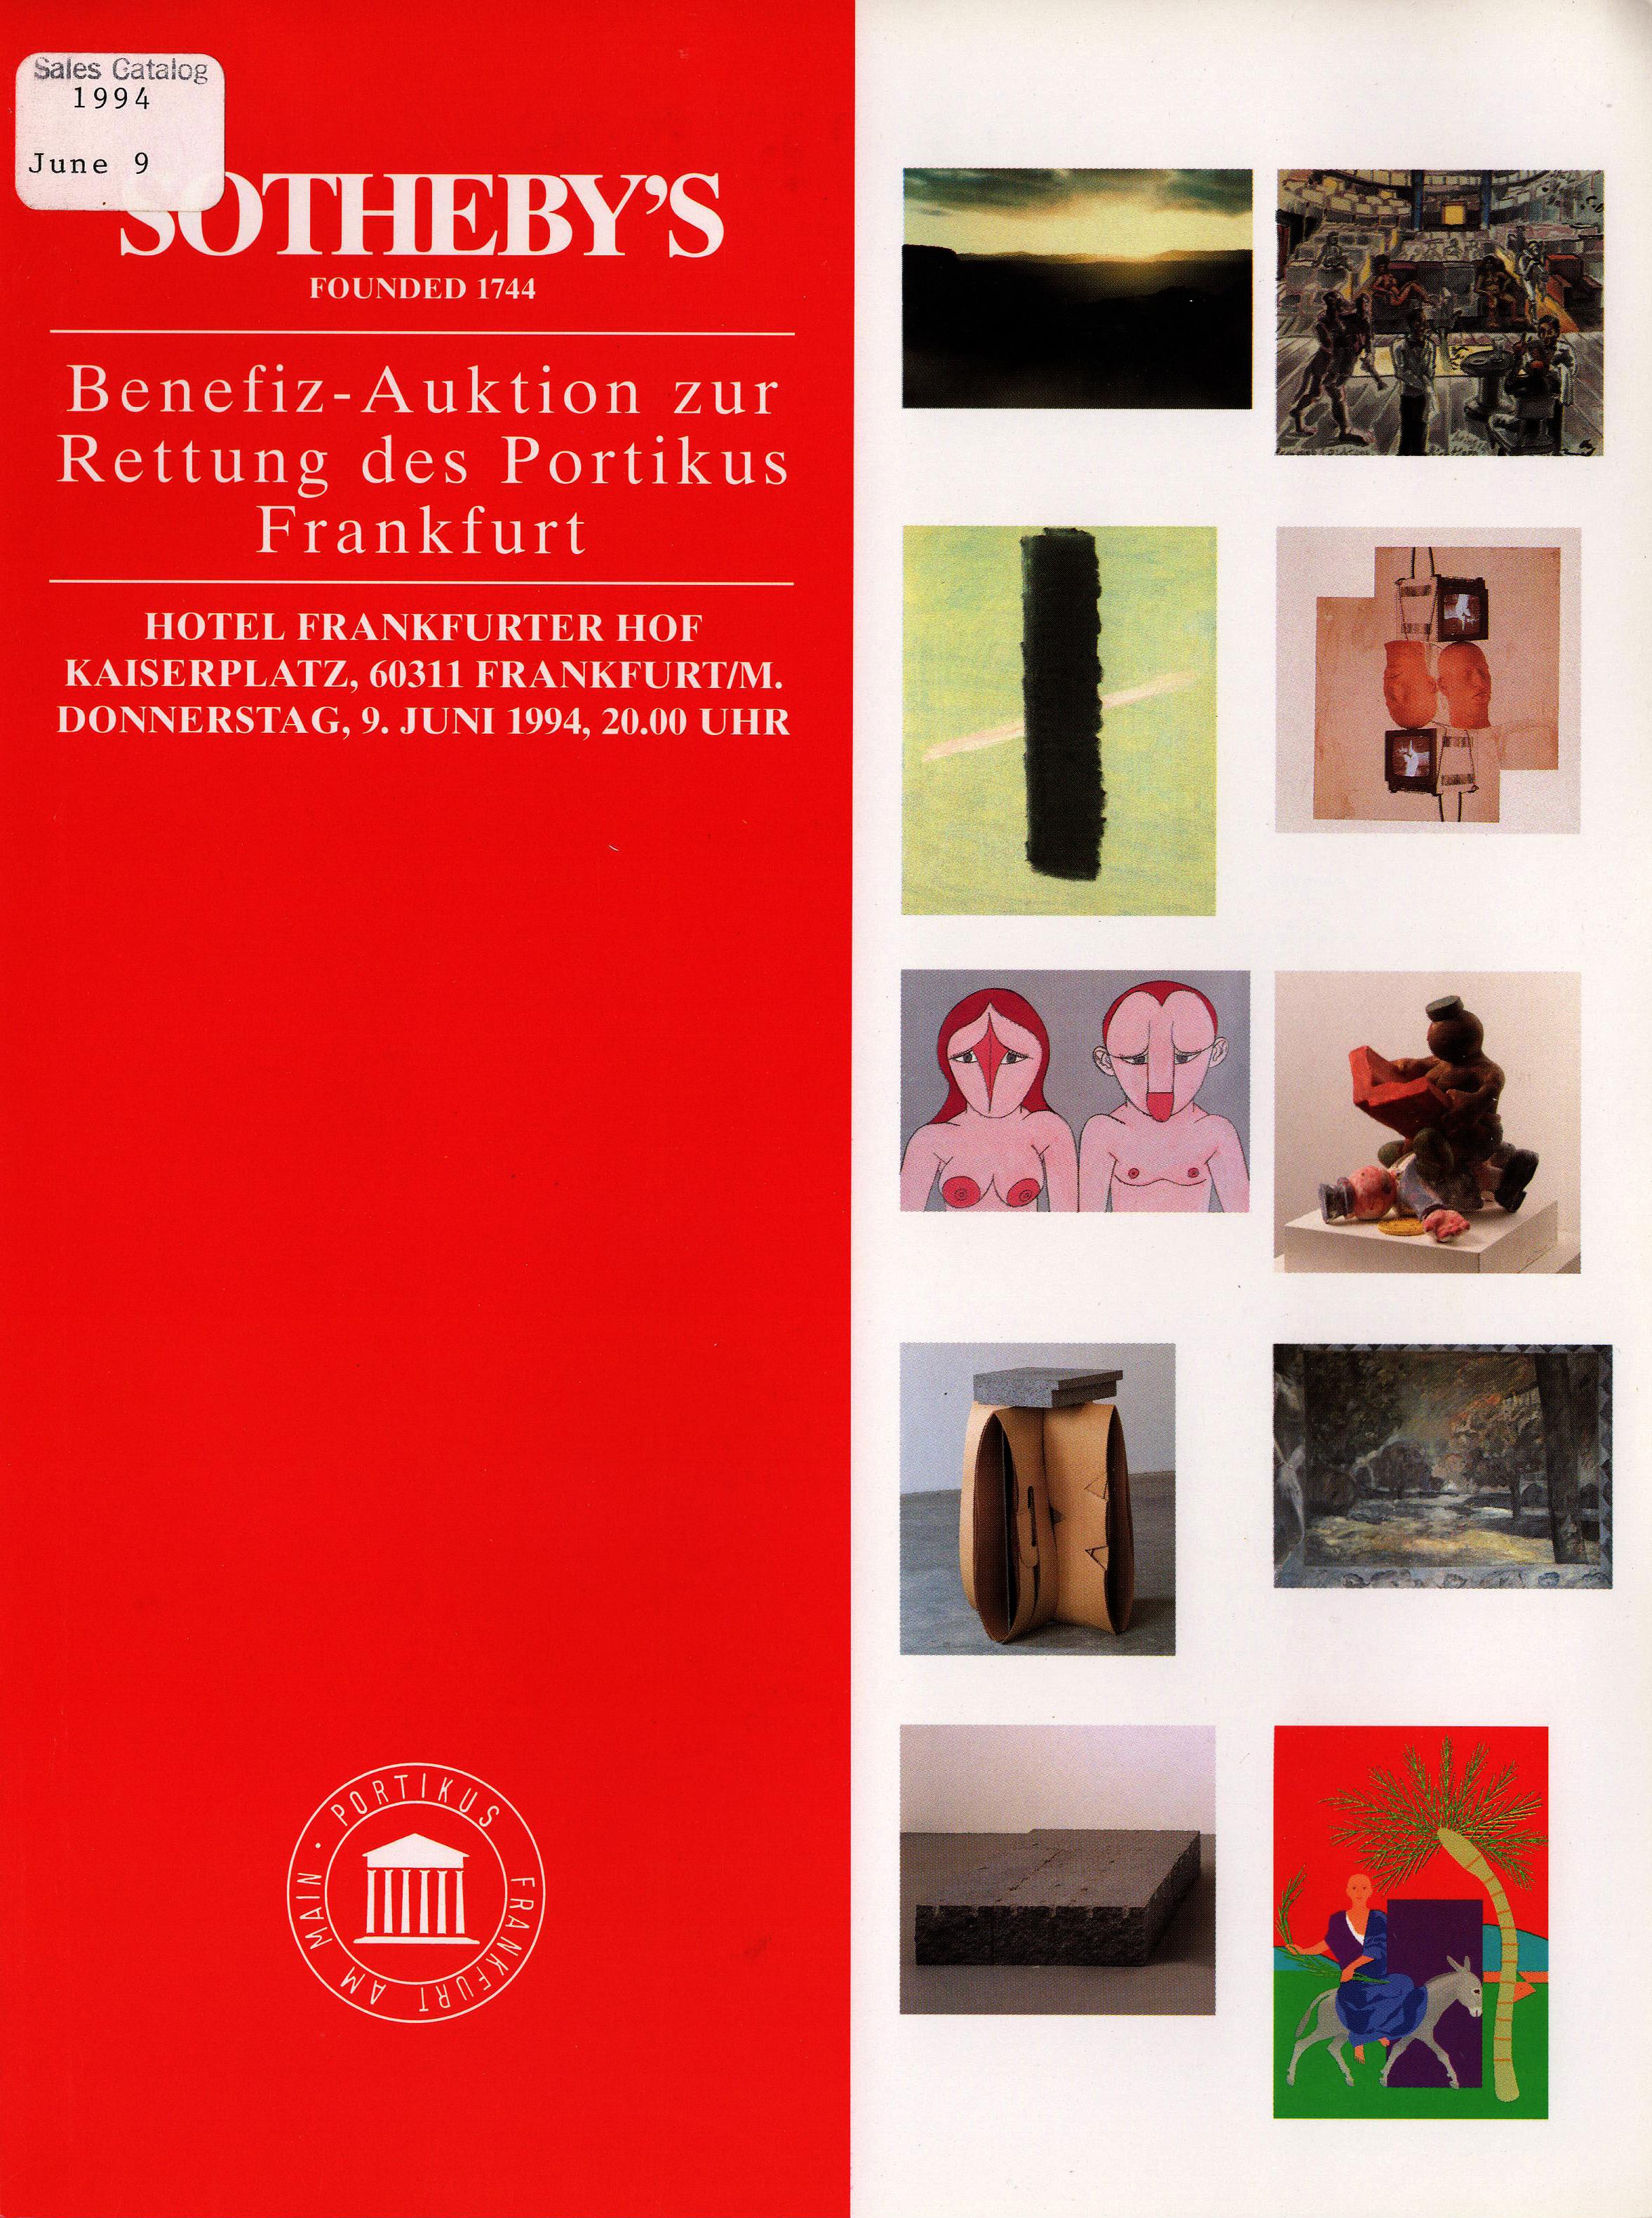 Sothebys June 1994 Benefit Auction to Save Portikus Frankfurt (Digital Only)